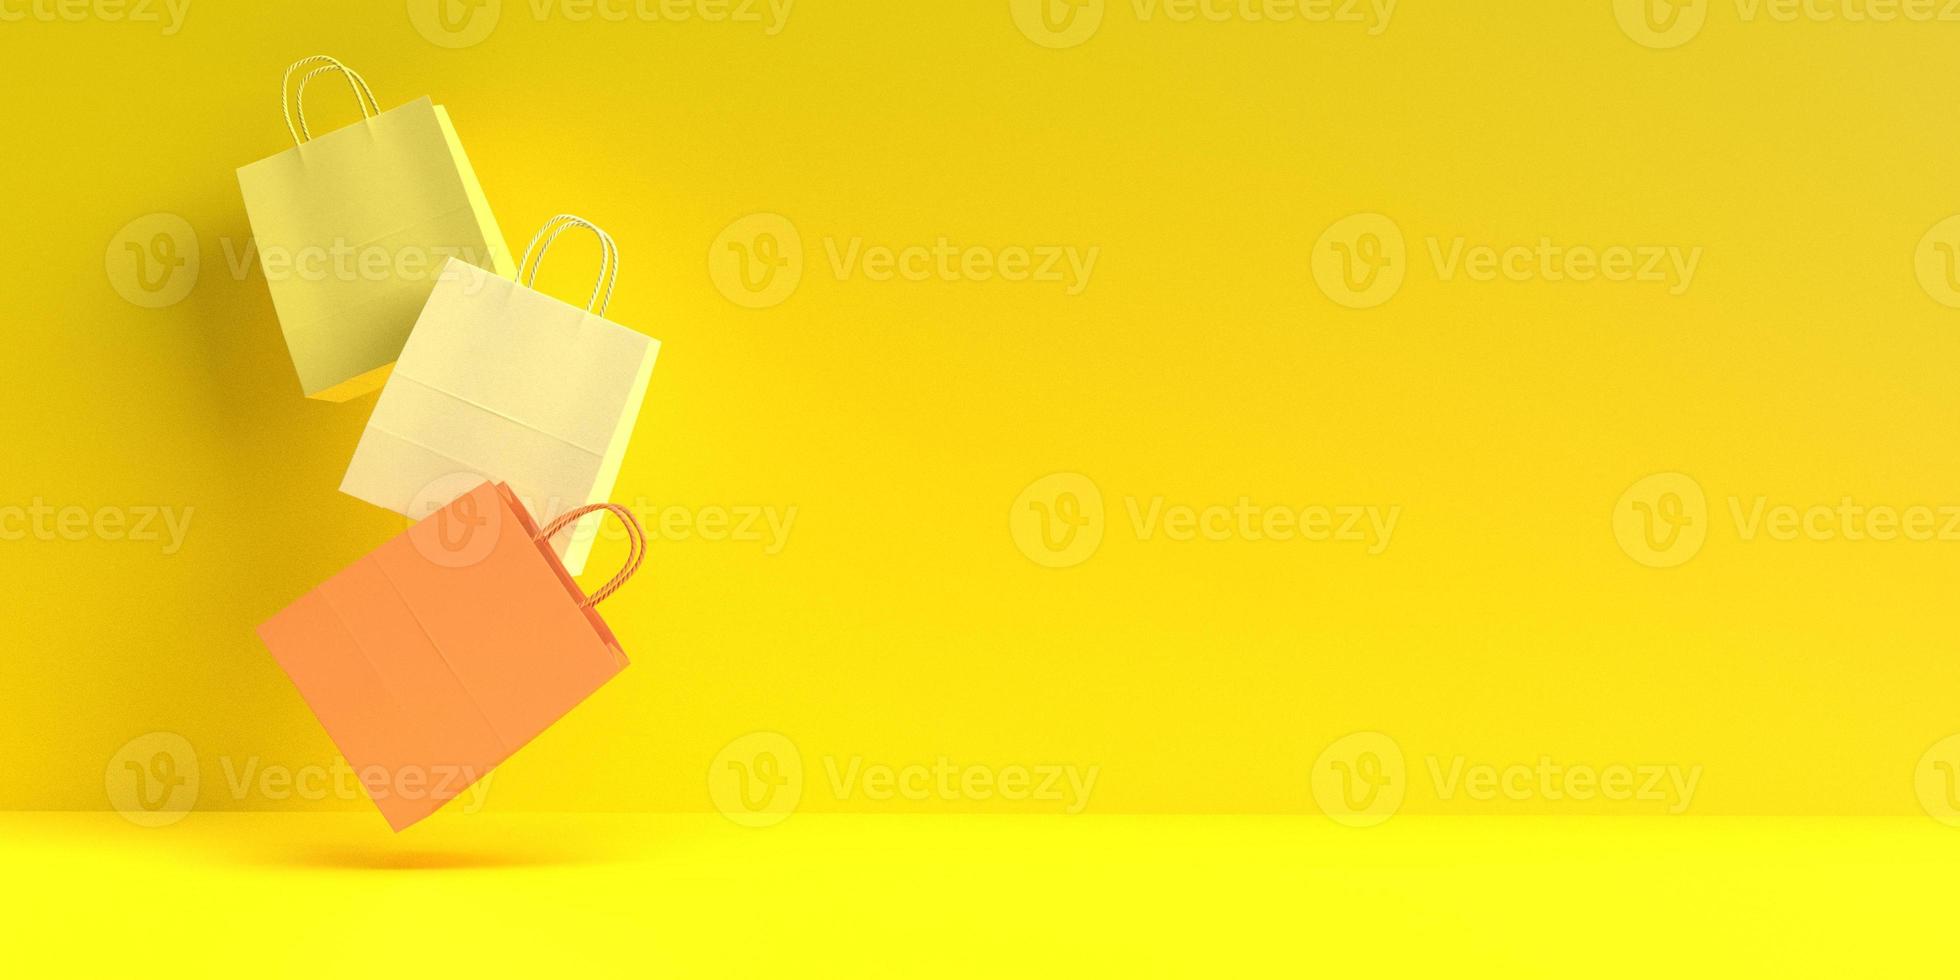 borsa giallo arancione rosso bianco colore dorato sfondo carta parati copia spazio decorazione ornamento affari shopping venerdì vendita negozio vendita al dettaglio prodotto speciale sorpresa commerciale sconto consumatore.3d rendering foto